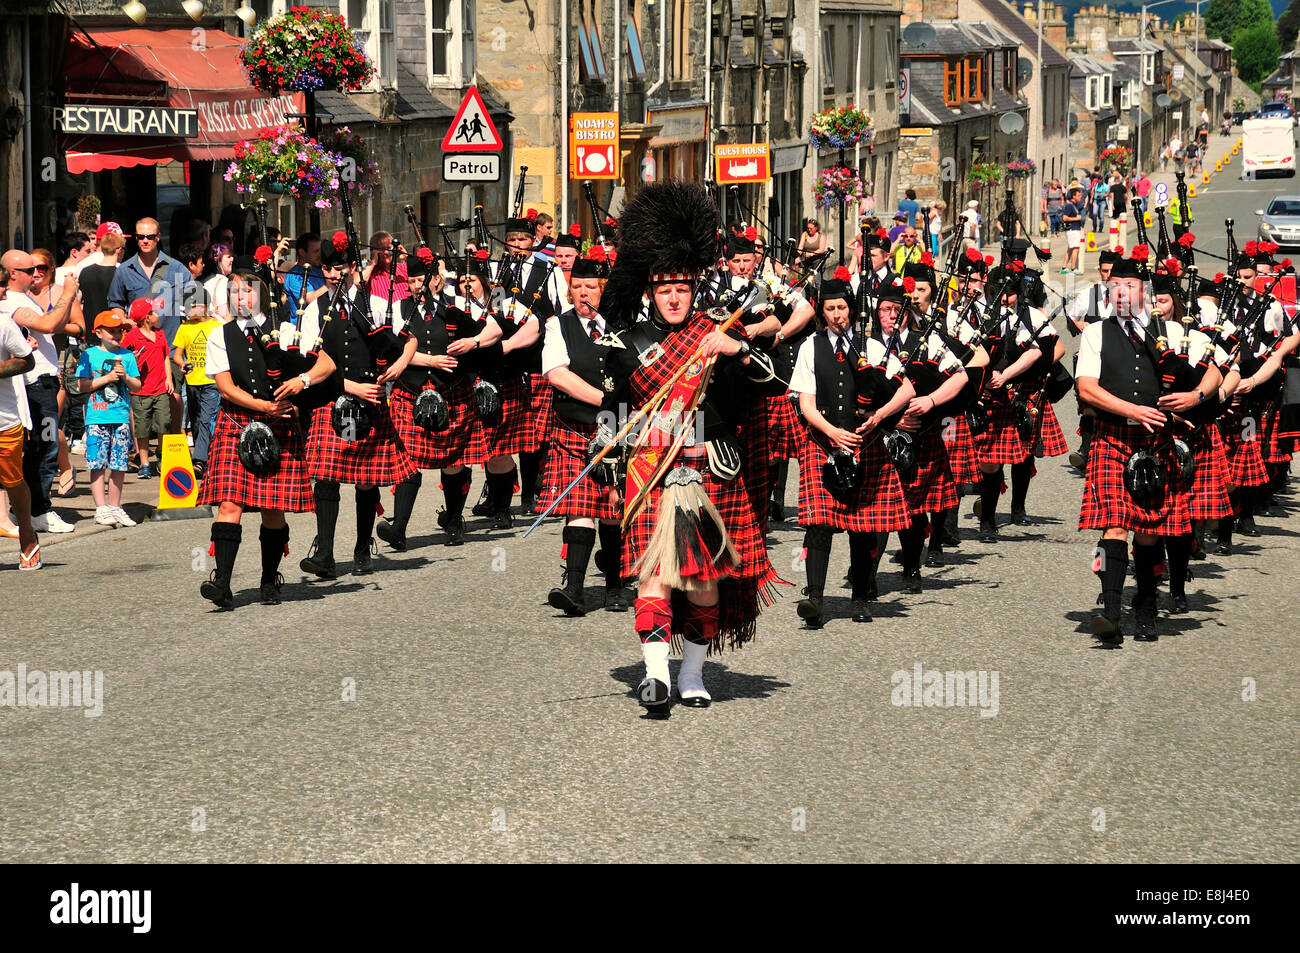 Le cornemuseur-major menant une cornemuses défilent à l'unisson à travers la ville, Dufftown, Moray, Highlands, Ecosse, Royaume-Uni Banque D'Images